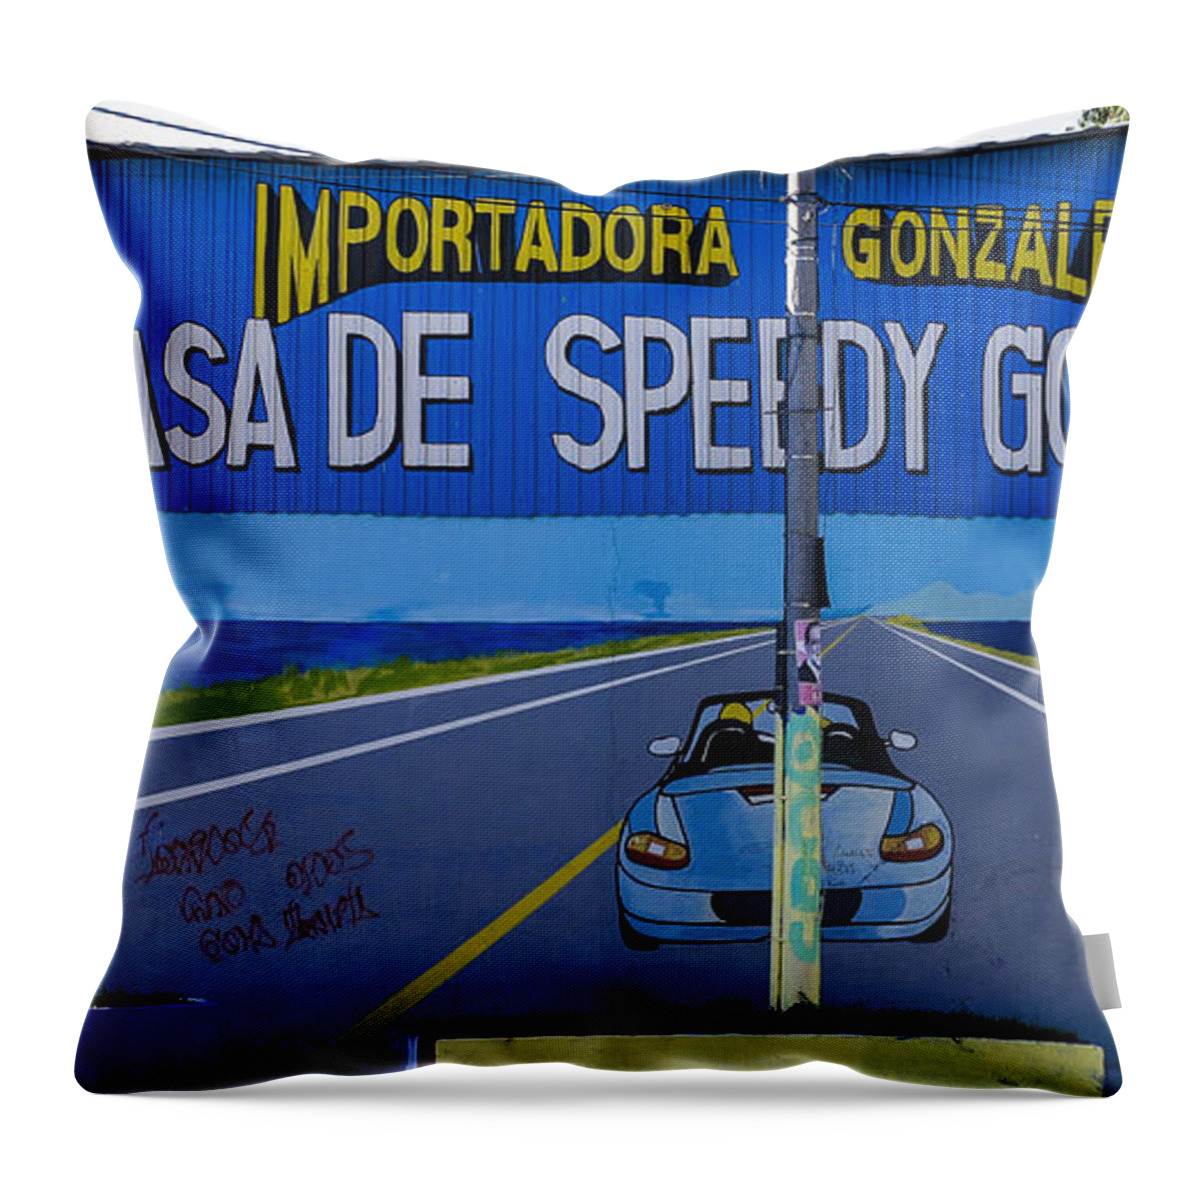 El Salvador Throw Pillow featuring the photograph Speedy Gonzalez by Steven Ralser